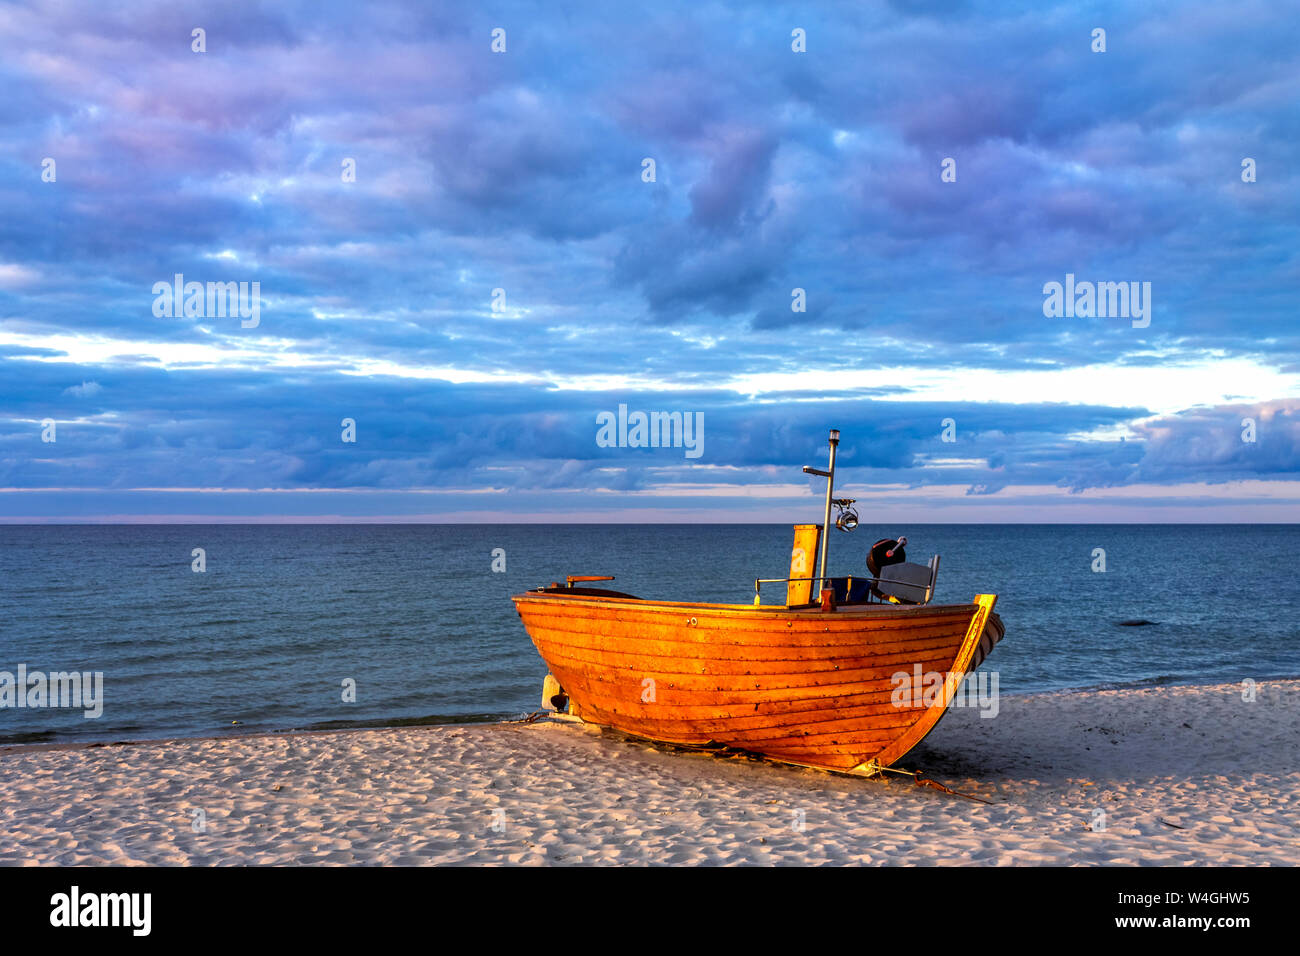 Boat on the beach, Binz, Ruegen, Germany Stock Photo